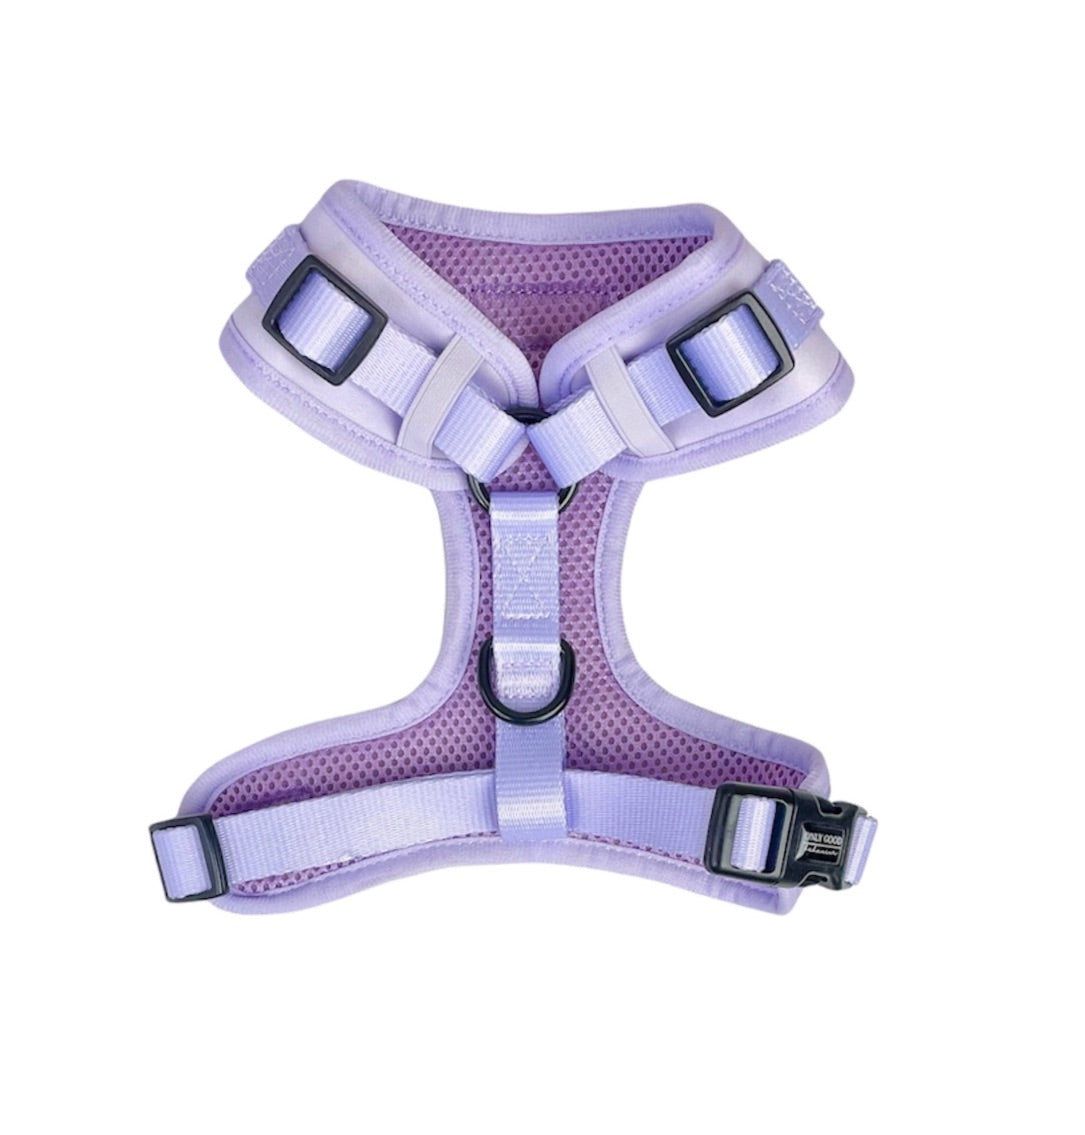 Adjustable Harness - Lovely Lavender